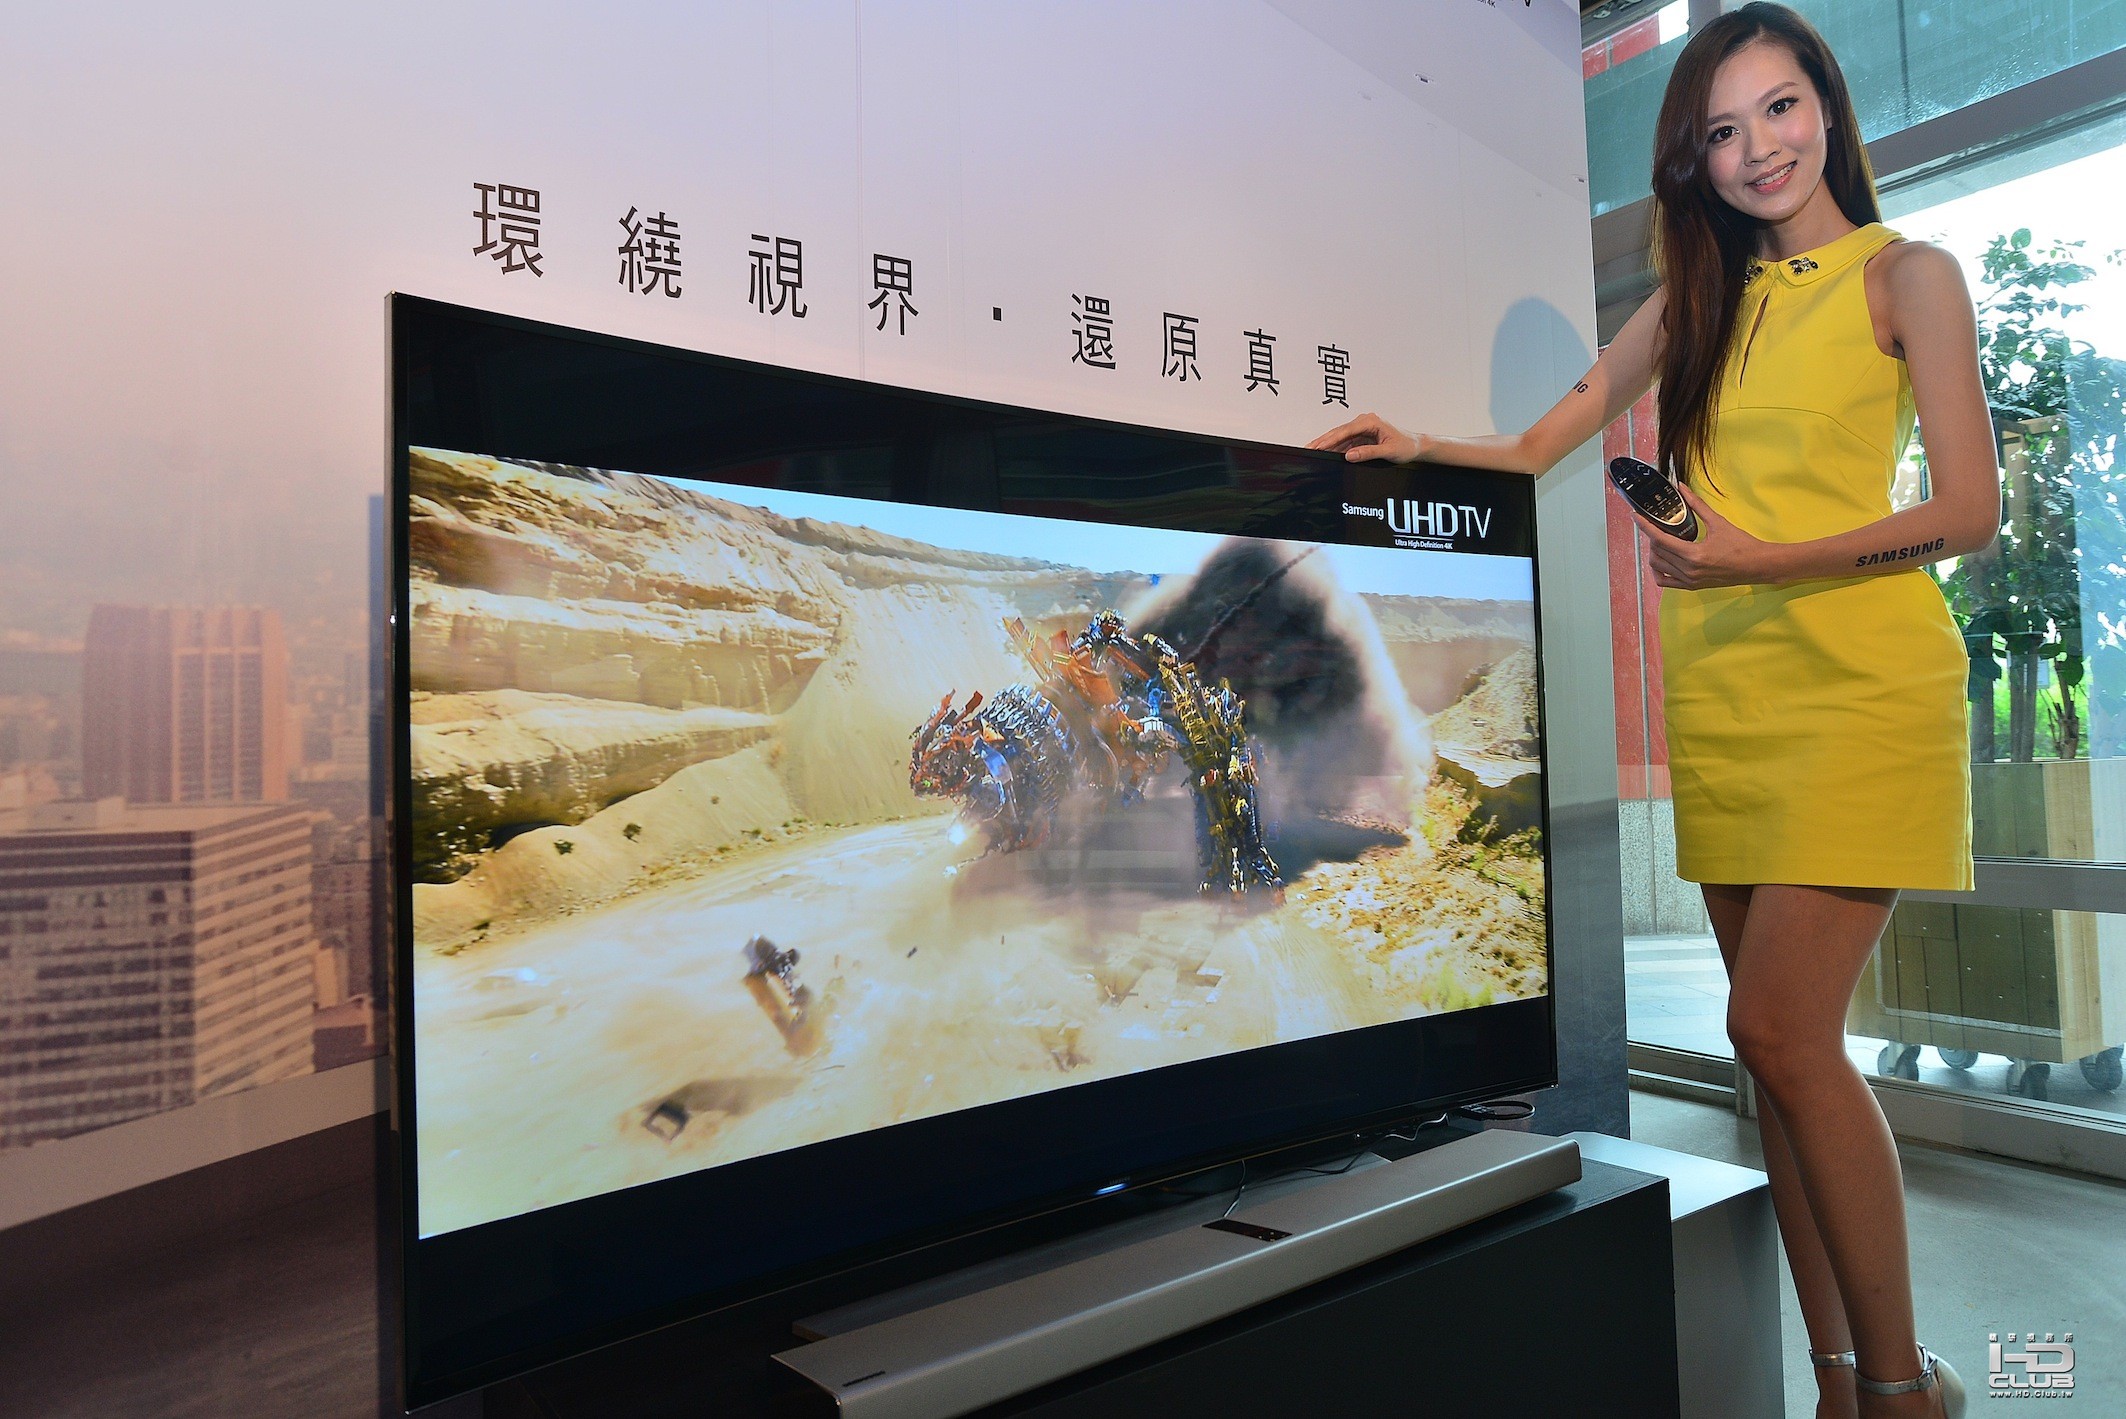 三星4200R黃金曲面UHD TV  4K影像升頻技術加持 畫面顯示效果倍增細膩超乎想像.JPG.jpg